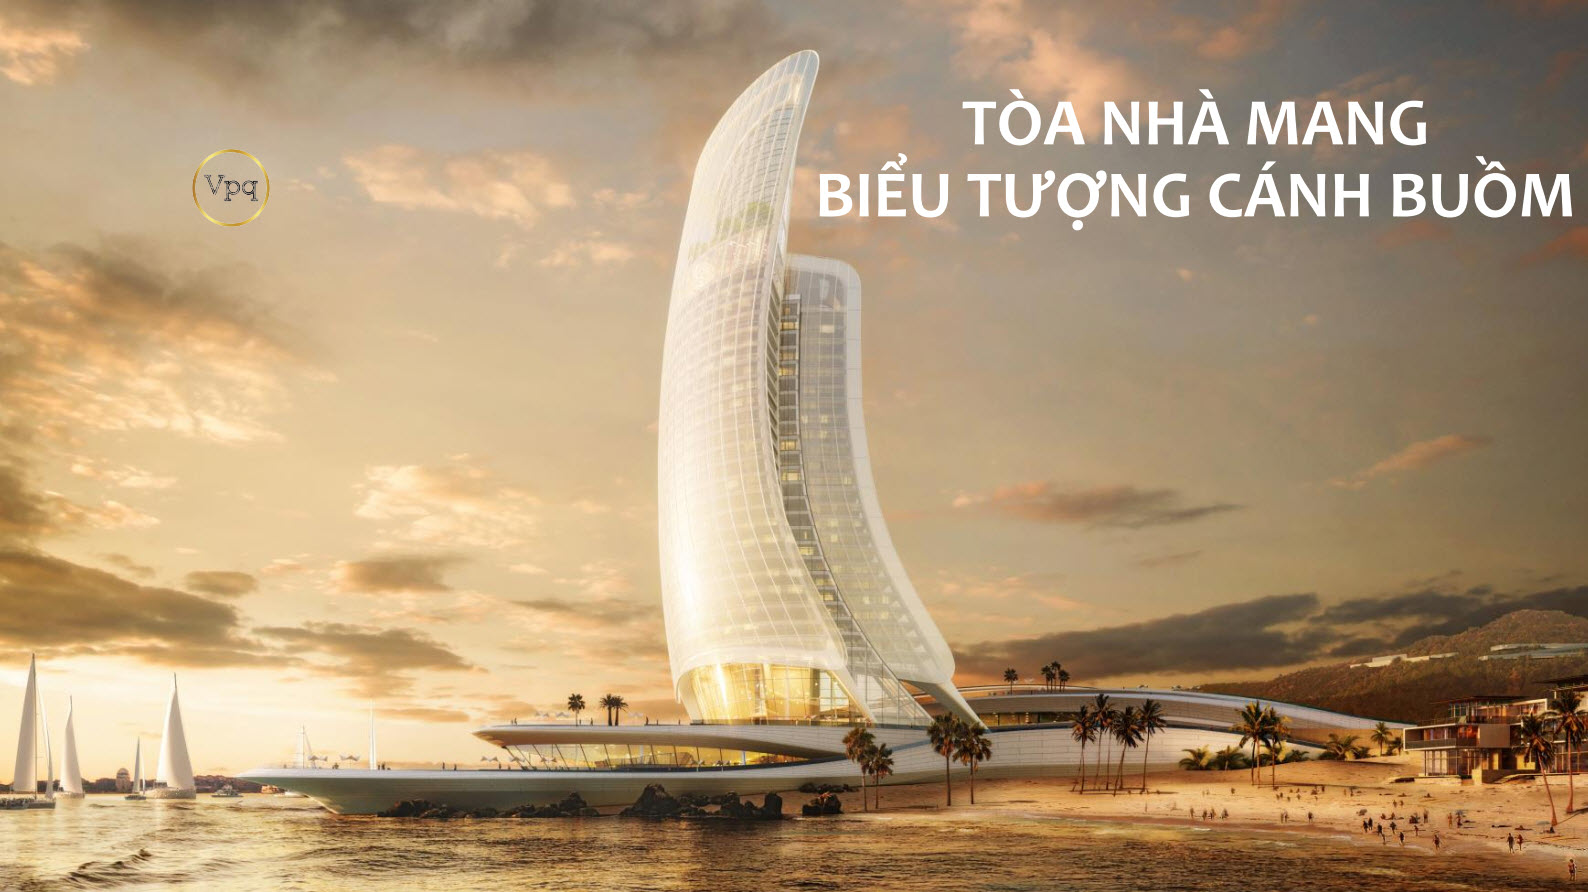 Hình ảnh tòa nhà Cánh Buồm biểu tượng của Đảo Thiên Đường Hòn Thơm